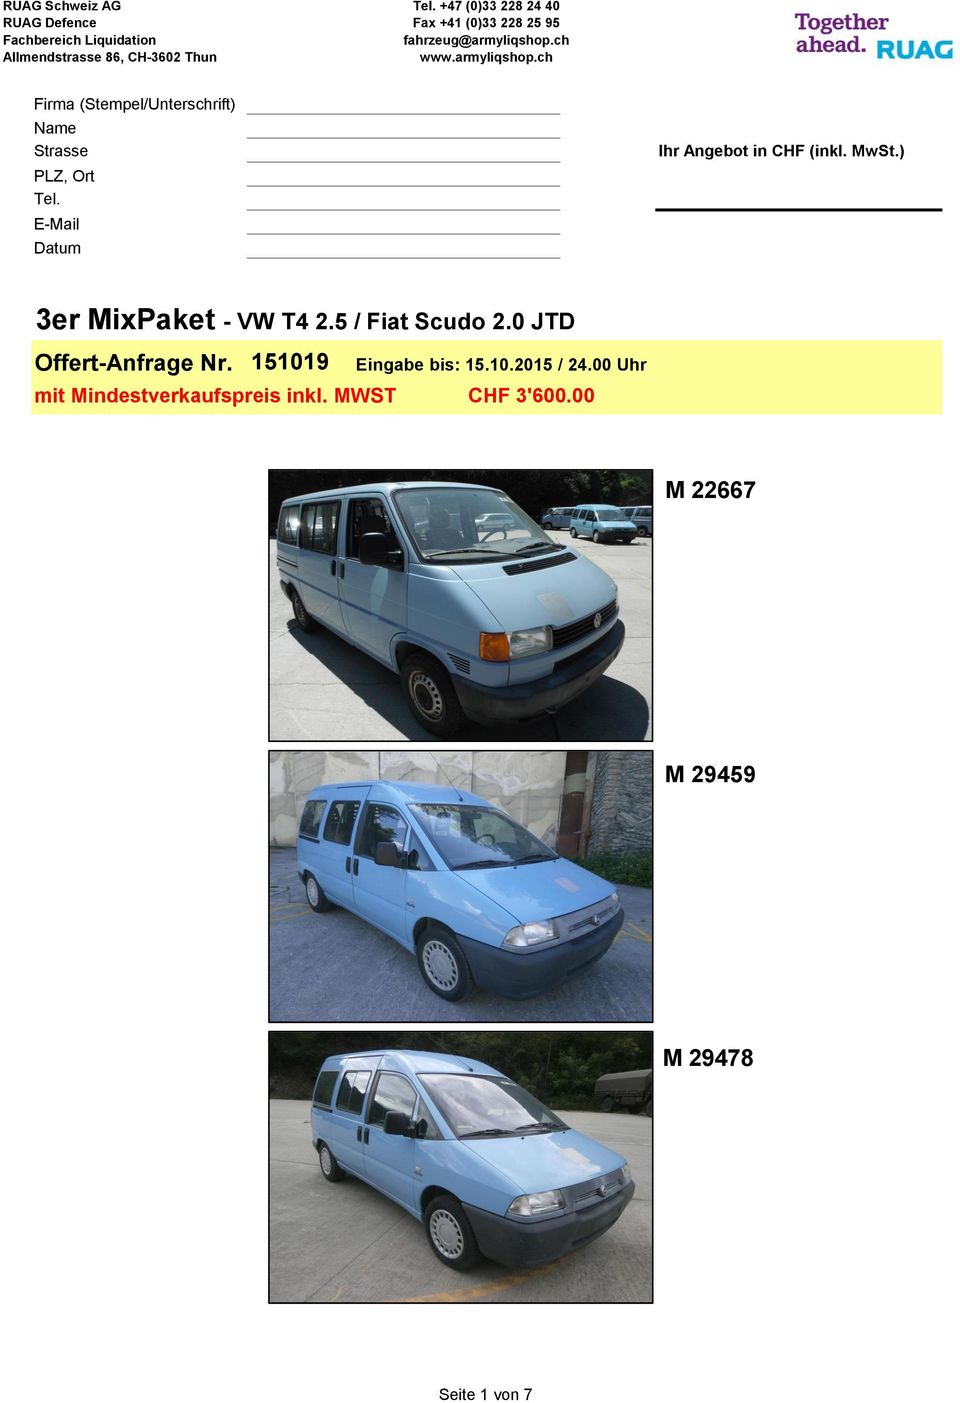 ) 3er MixPaket VW T4 2.5 / Fiat Scudo 2.